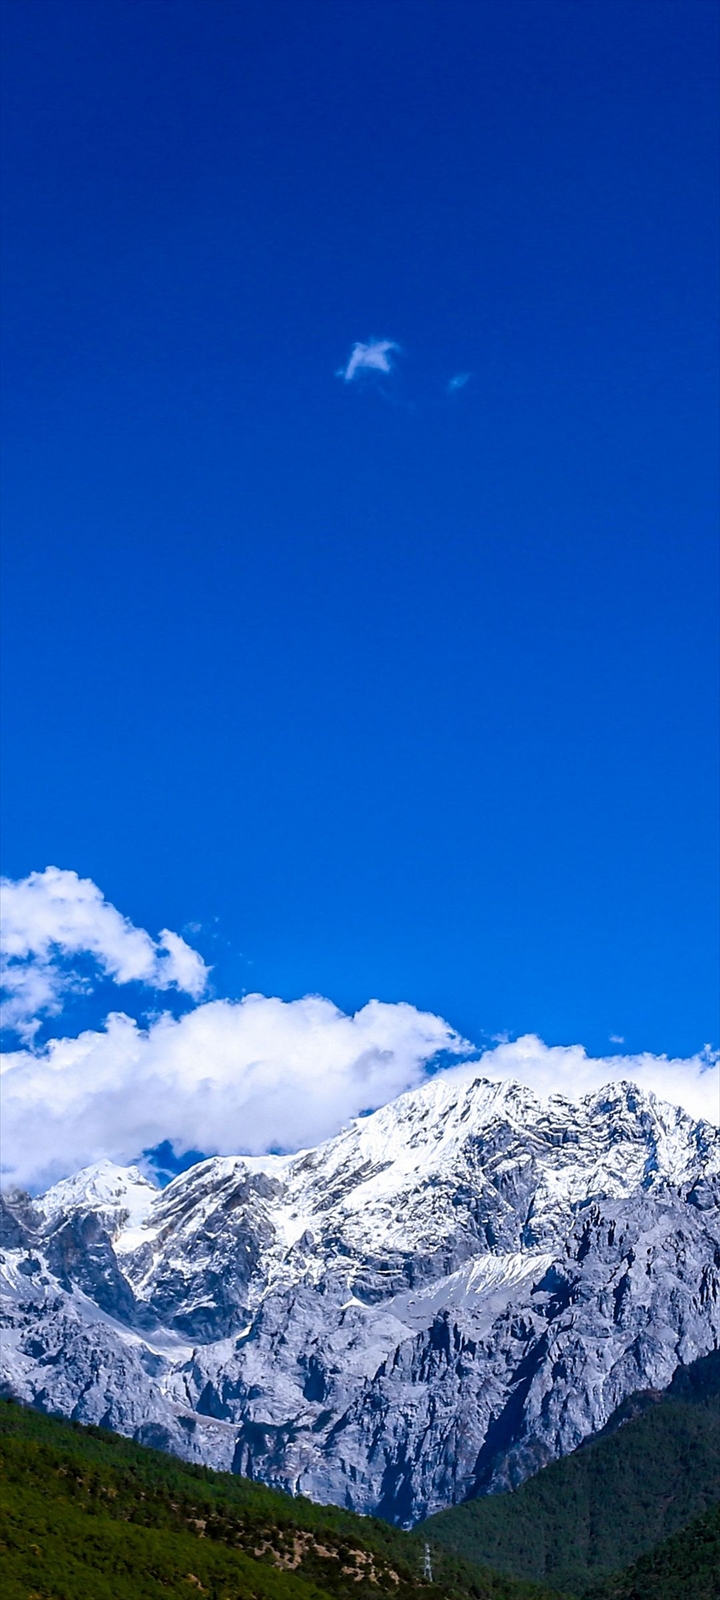 綺麗な青空と雪山 Moto G9 Play Androidスマホ壁紙 待ち受け スマラン